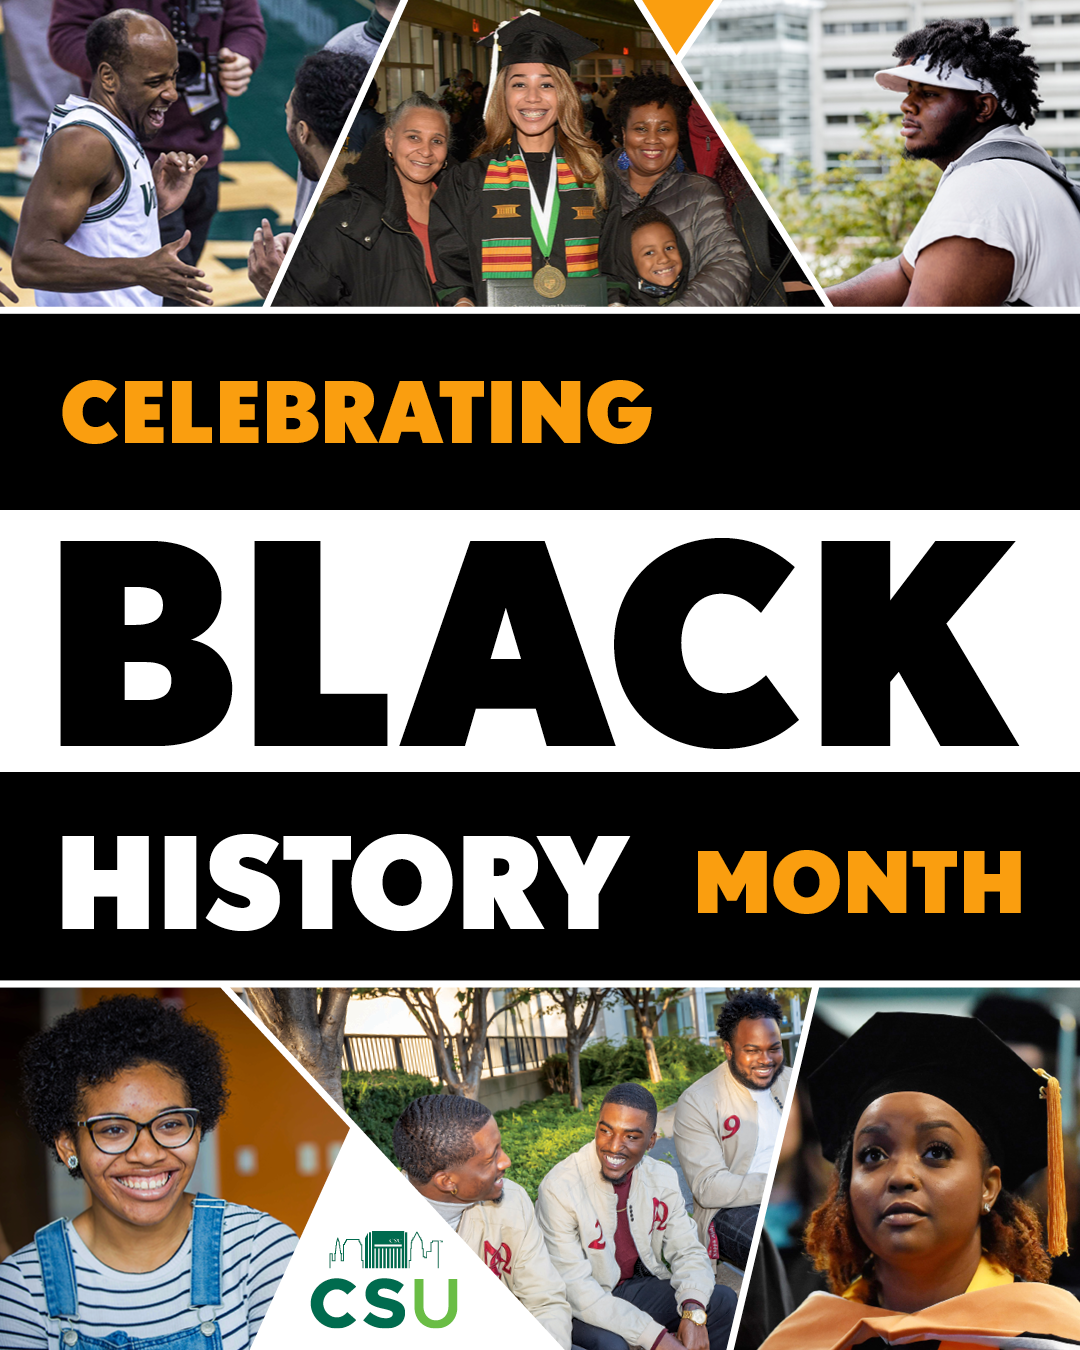 二月是黑人历史月,基社盟的特殊编程社区